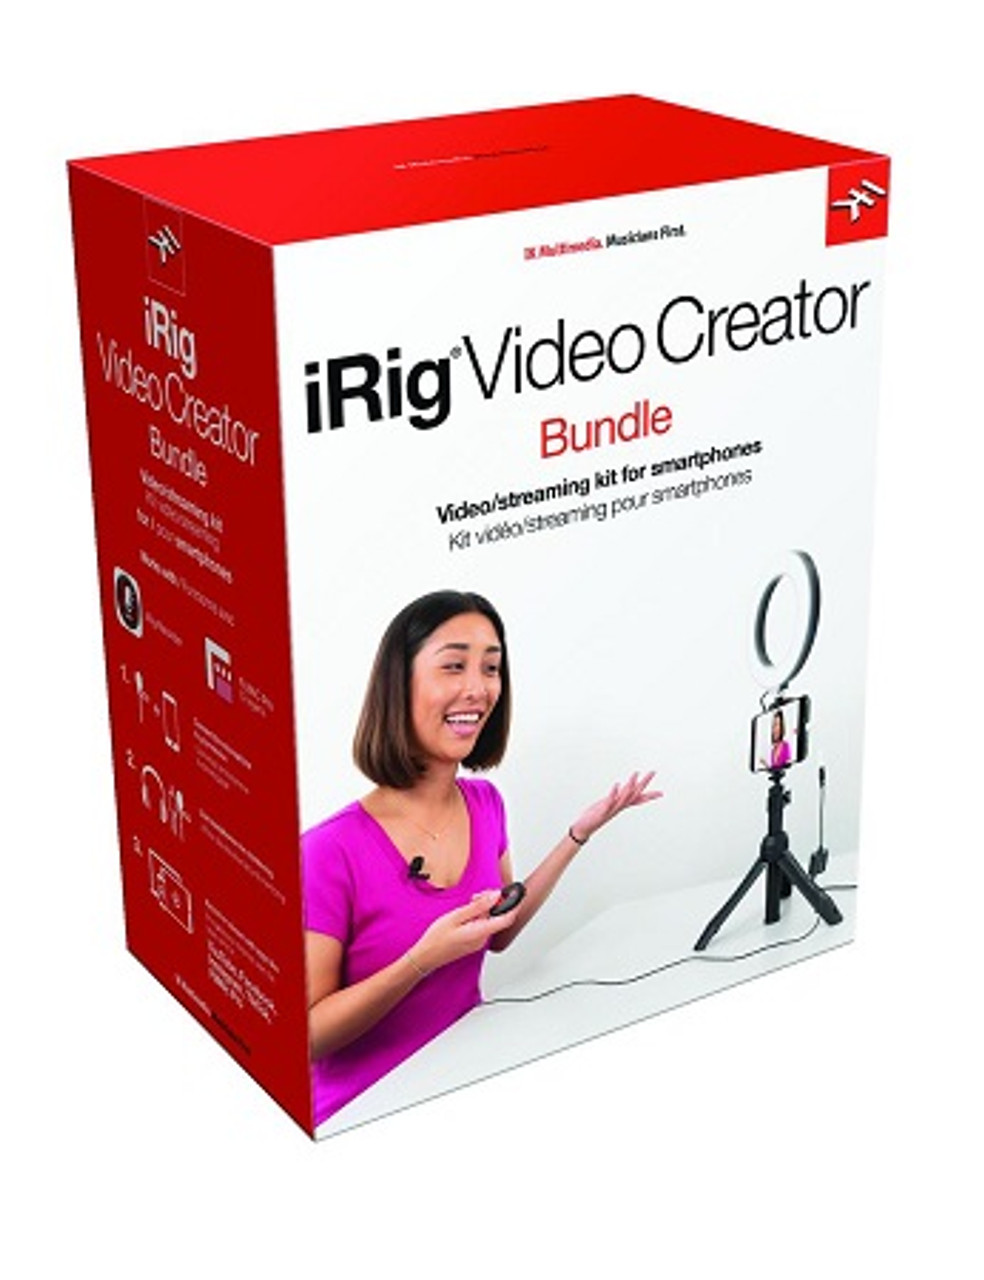 iRig Video Creator Bundle Creator Series Video/Streaming Kit